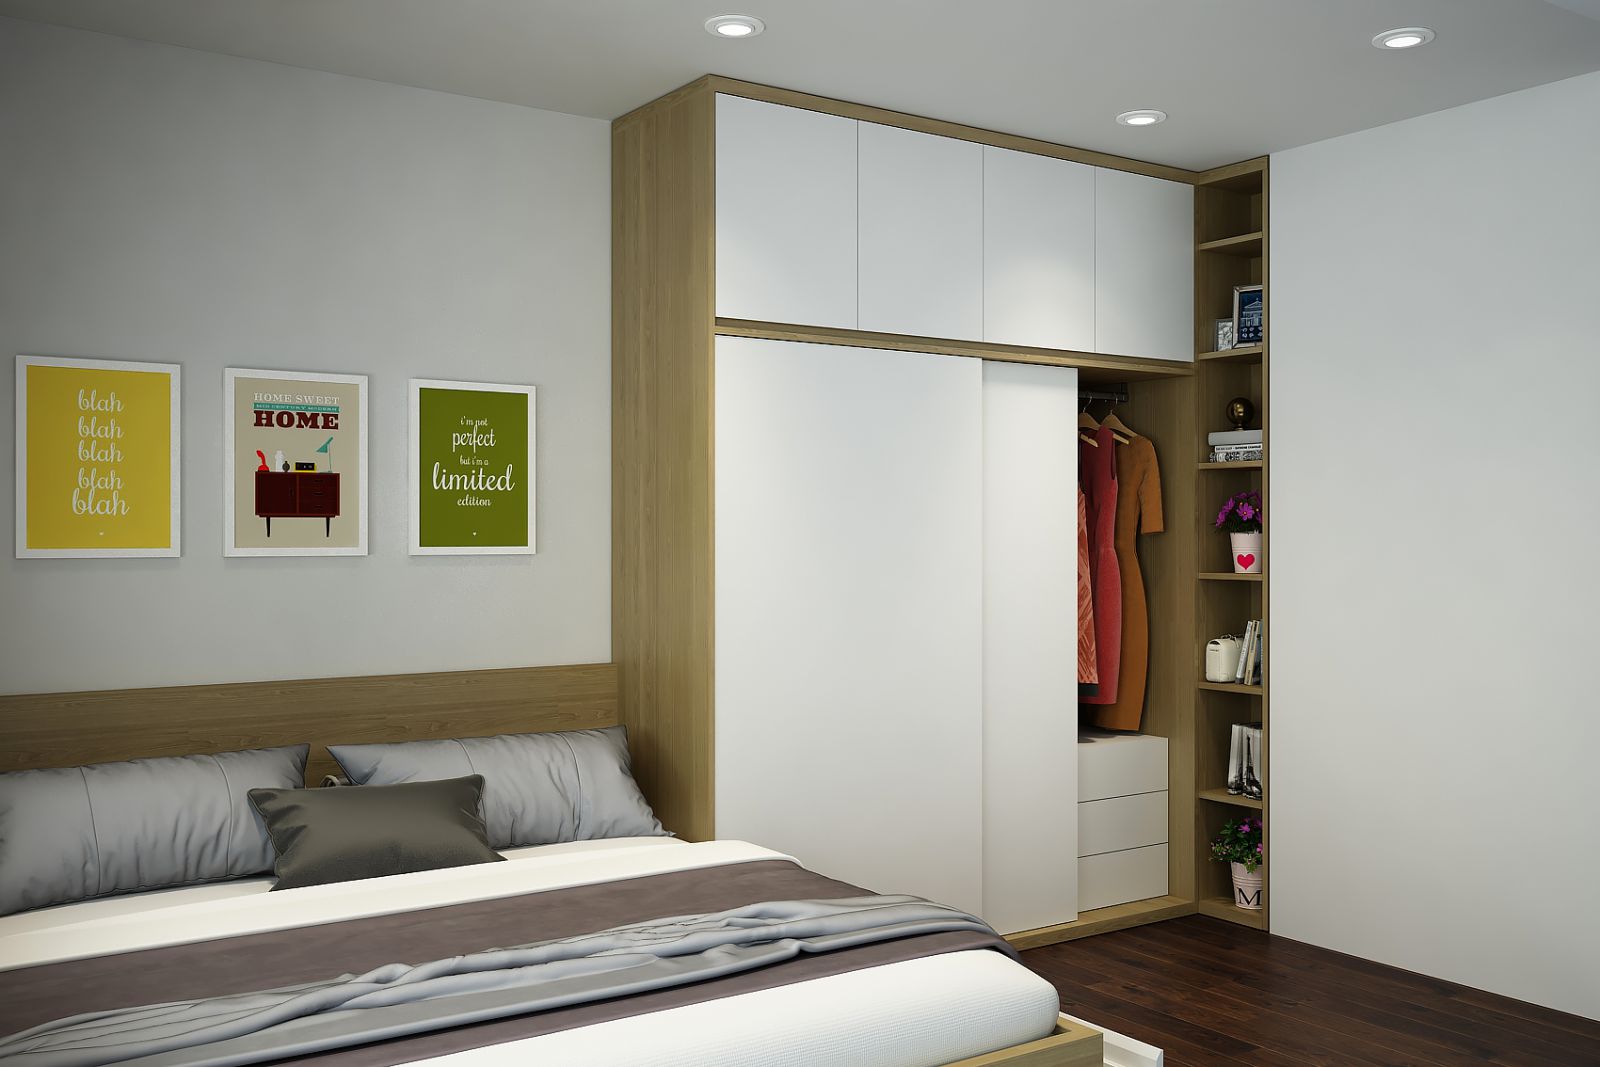  Thiết kế thi công nội thất nhà phố nhỏ đẹp, hiện đại với chất liệu gỗ MDF phủ laminate An Cường 